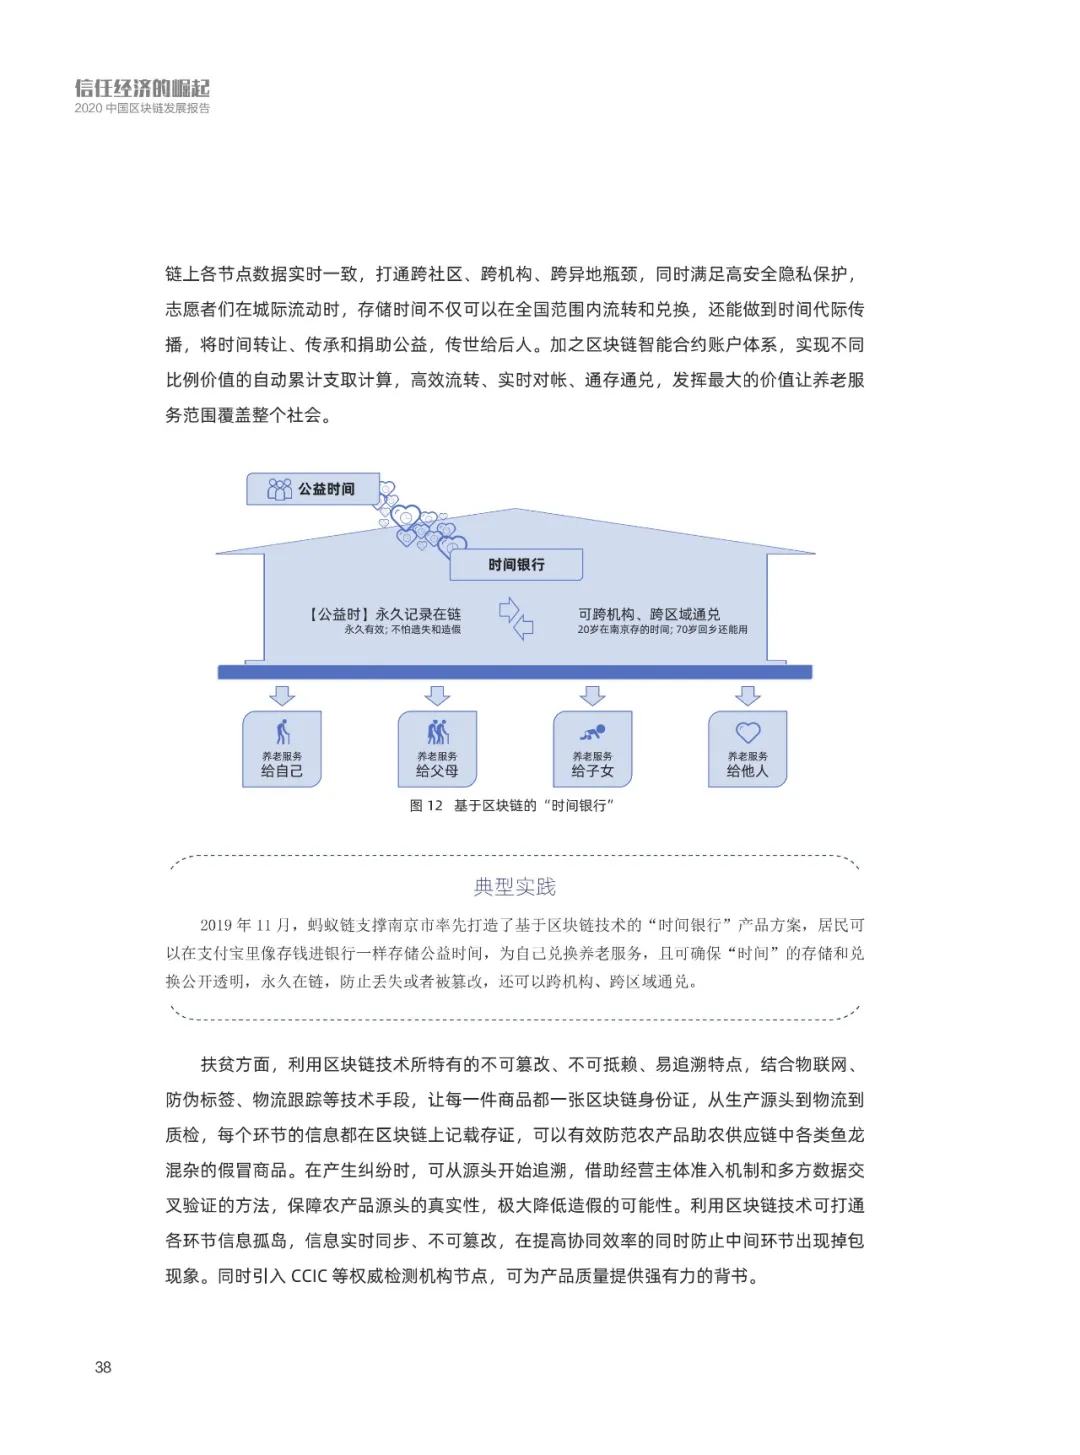 信任经济的崛起——2020中国区块链发展报告_加密算法_39